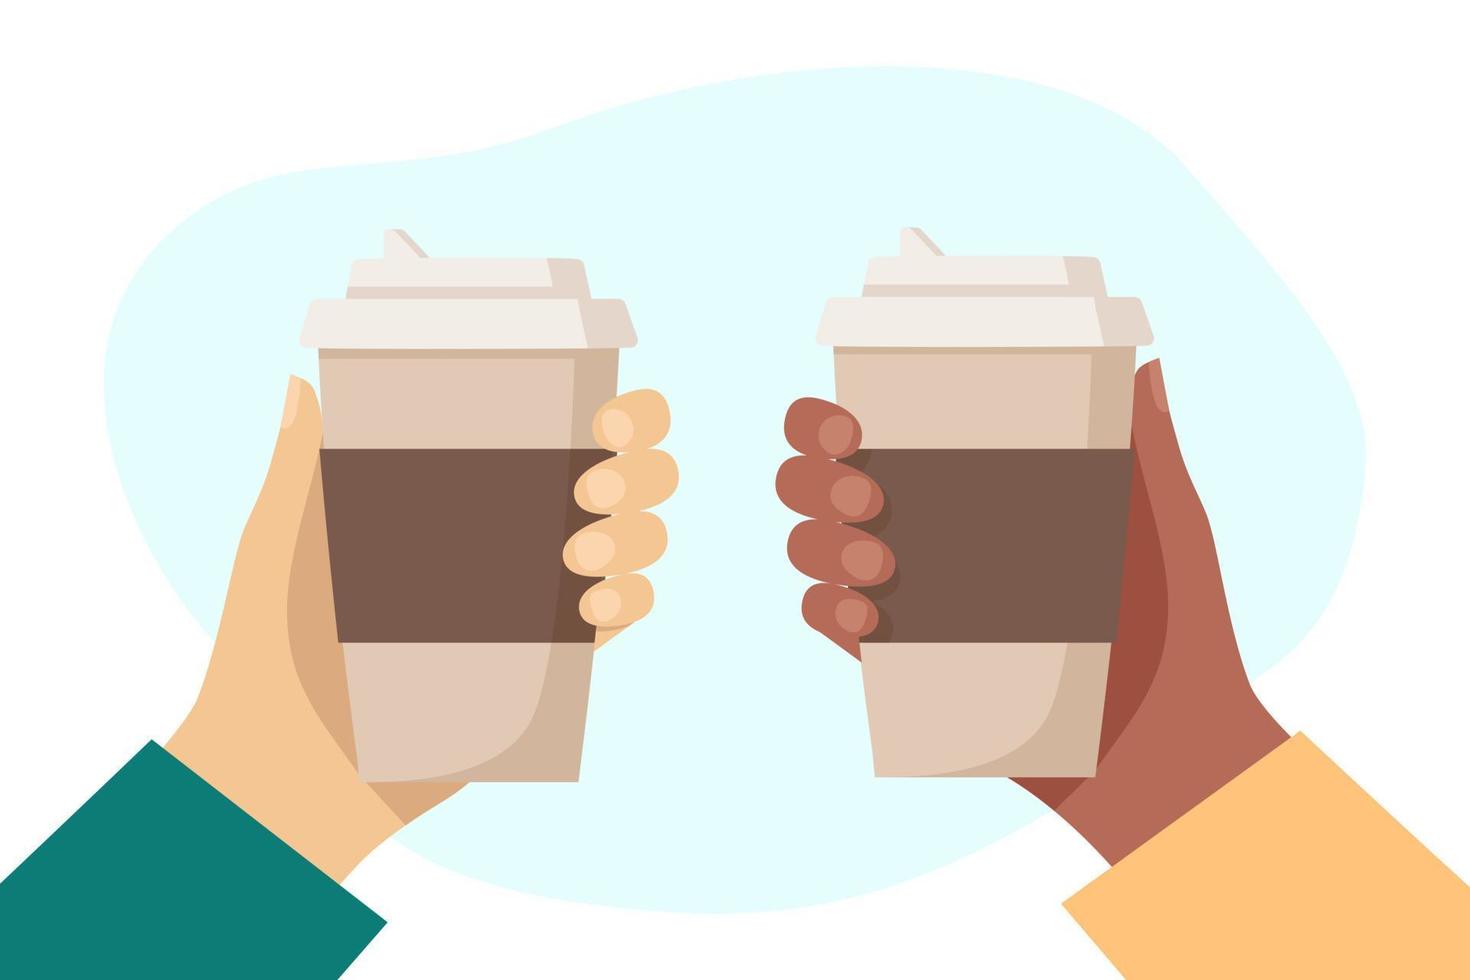 zwarte hand en witte hand houden kopjes warme drank vast. wegwerp koffie papieren beker. koffie om te gaan concept. platte vectorillustratie vector